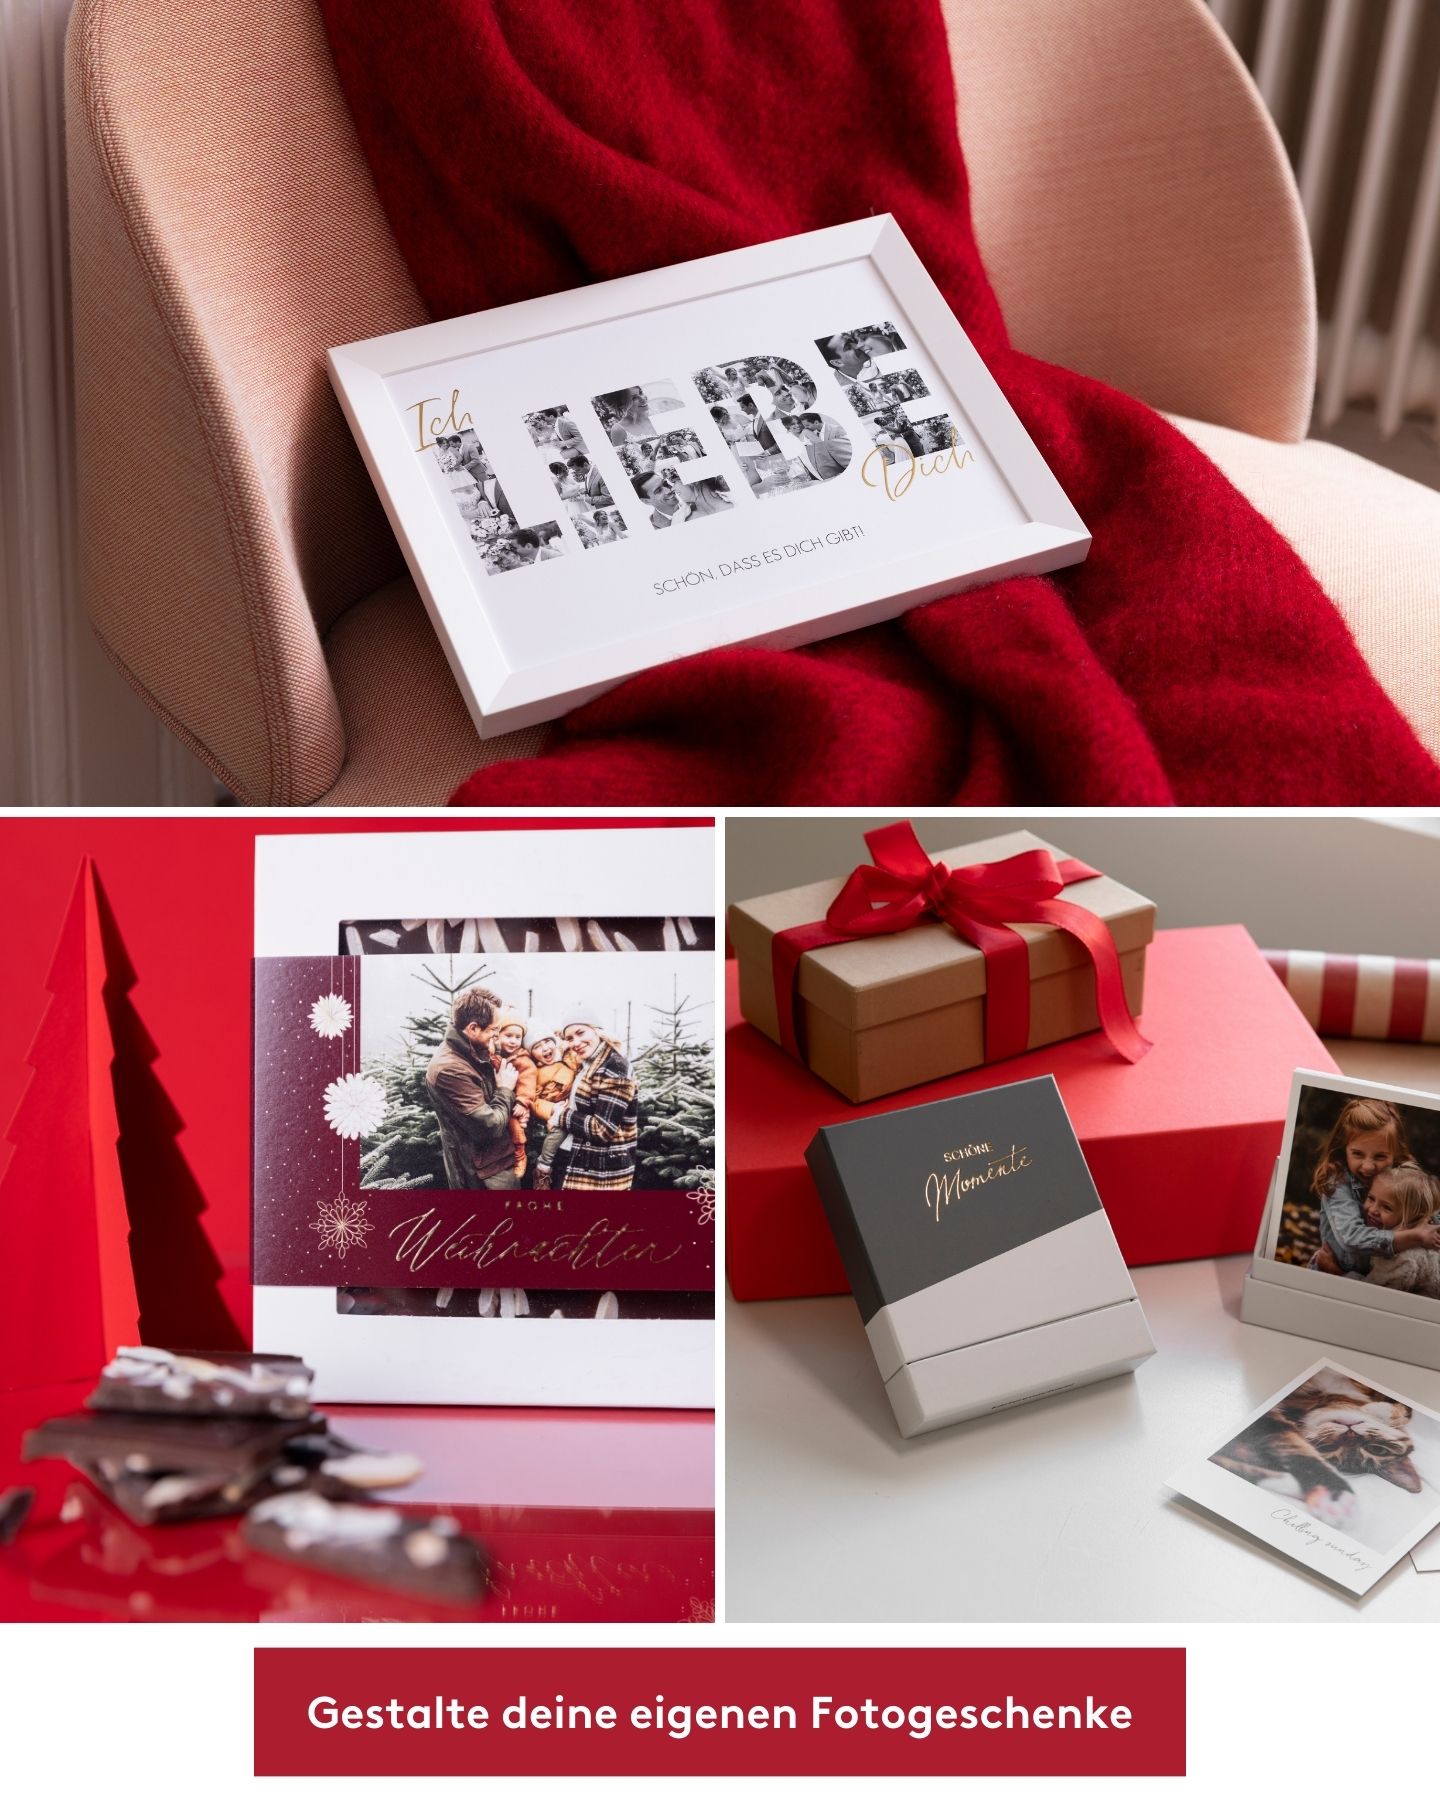 Fotoposter liegt auf Sessel. Schokolade mit einem Foto steht vor einem roten Hintergrund. Eine Bilderbox liegt auf dem Tisch.